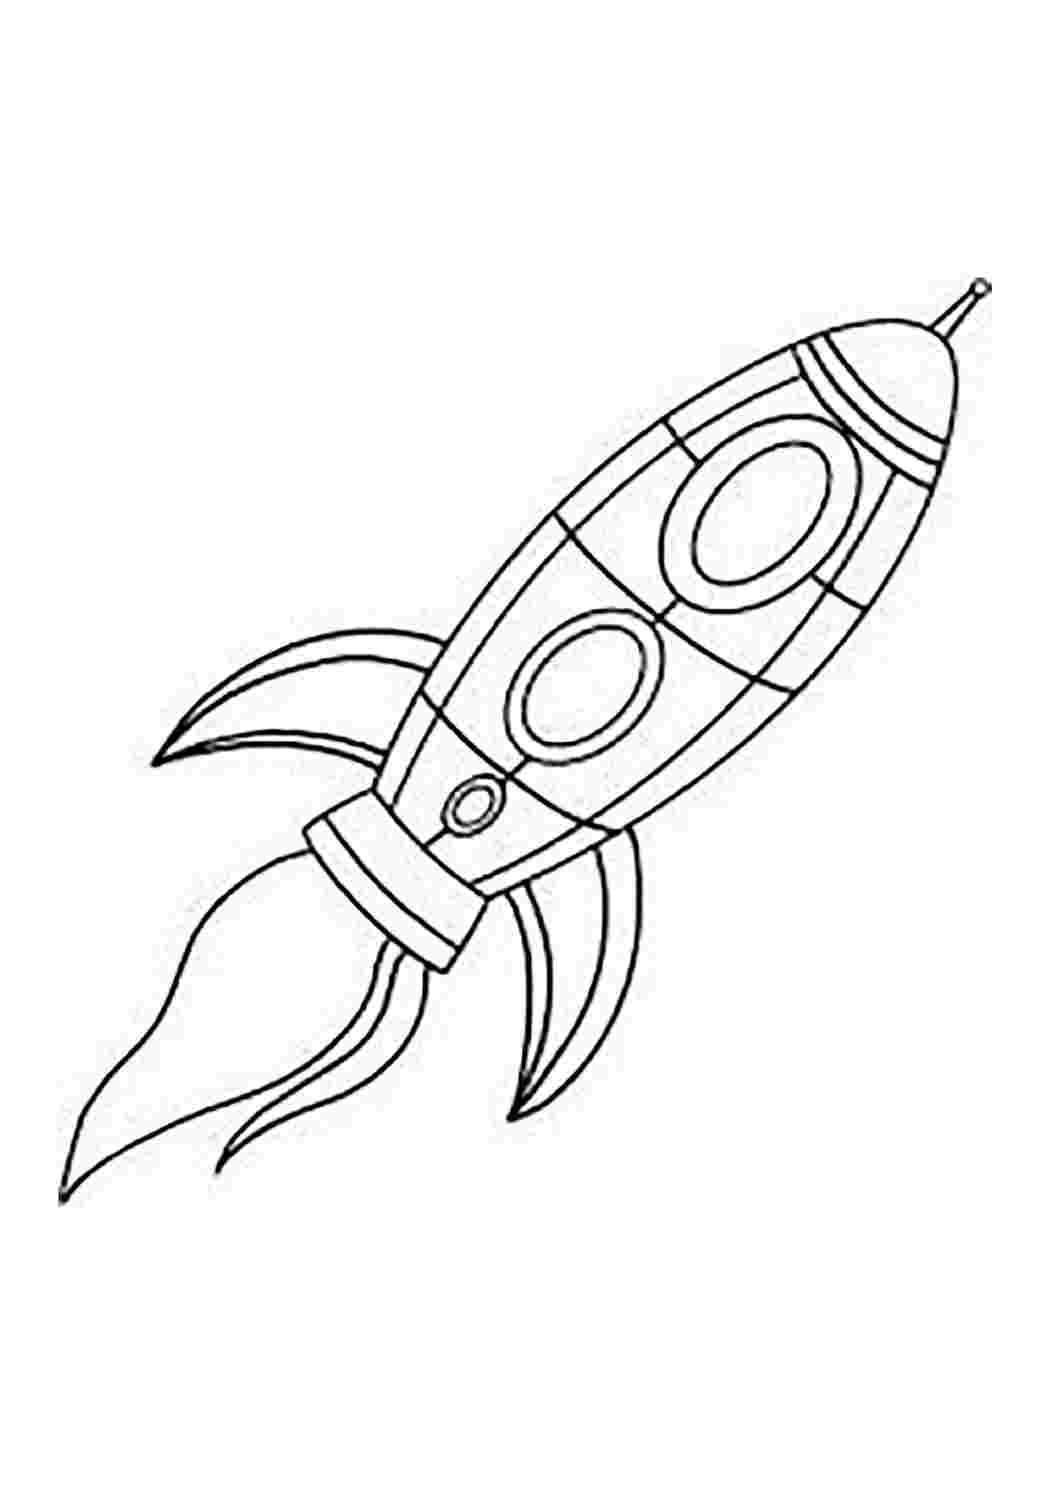 Ракета срисовать. Ракета раскраска. Ракета рисунок. Ракета раскраска для детей. Космический корабль рисунок карандашом.